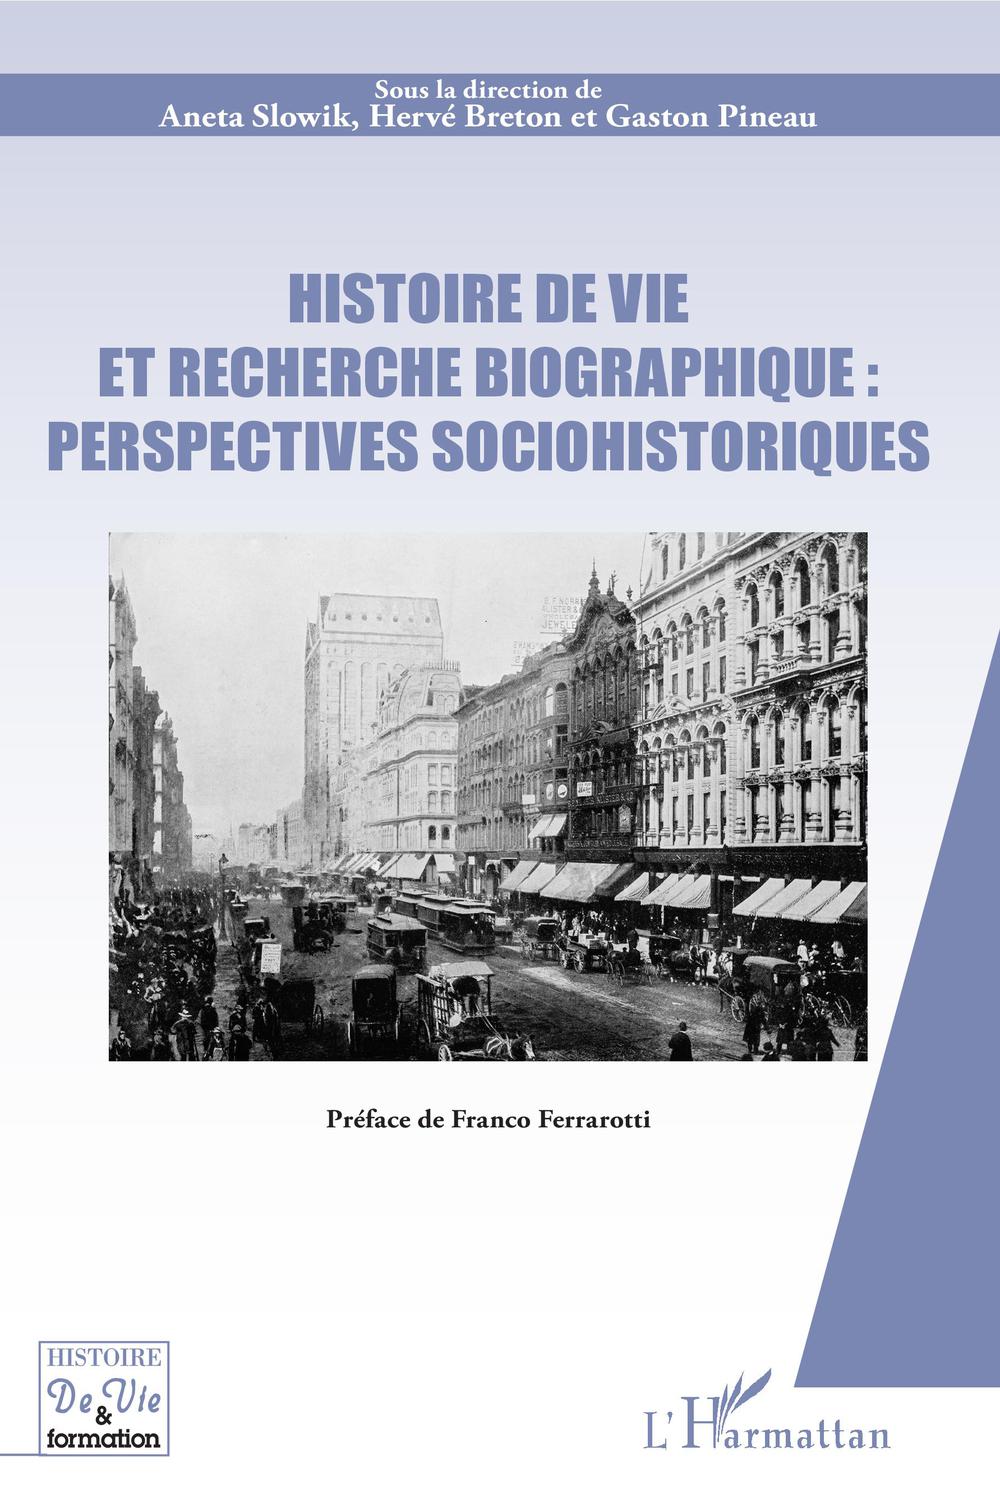 Histoire de vie et recherche biographique : perspectives sociohistoriques - Aneta Slowik, Hervé Breton, Gaston Pineau